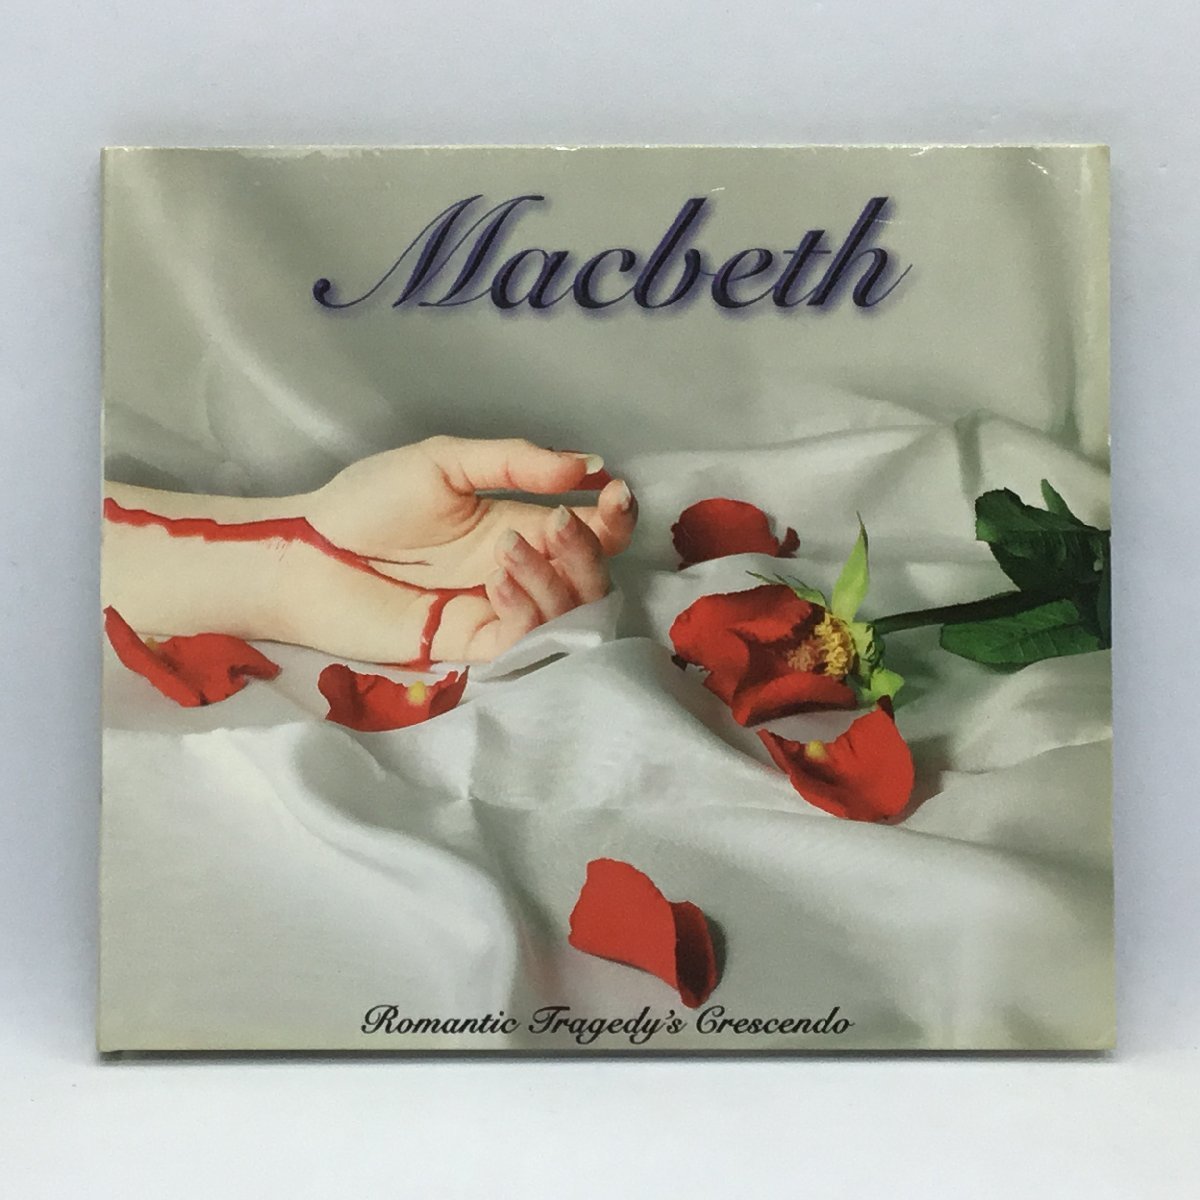 マクベス / ロマンティック・トラジディーズ・クレッセンド (CD) CHAOS004CD MACBETH / ROMANTIC TRAGEDY'S CRECENDOの画像1